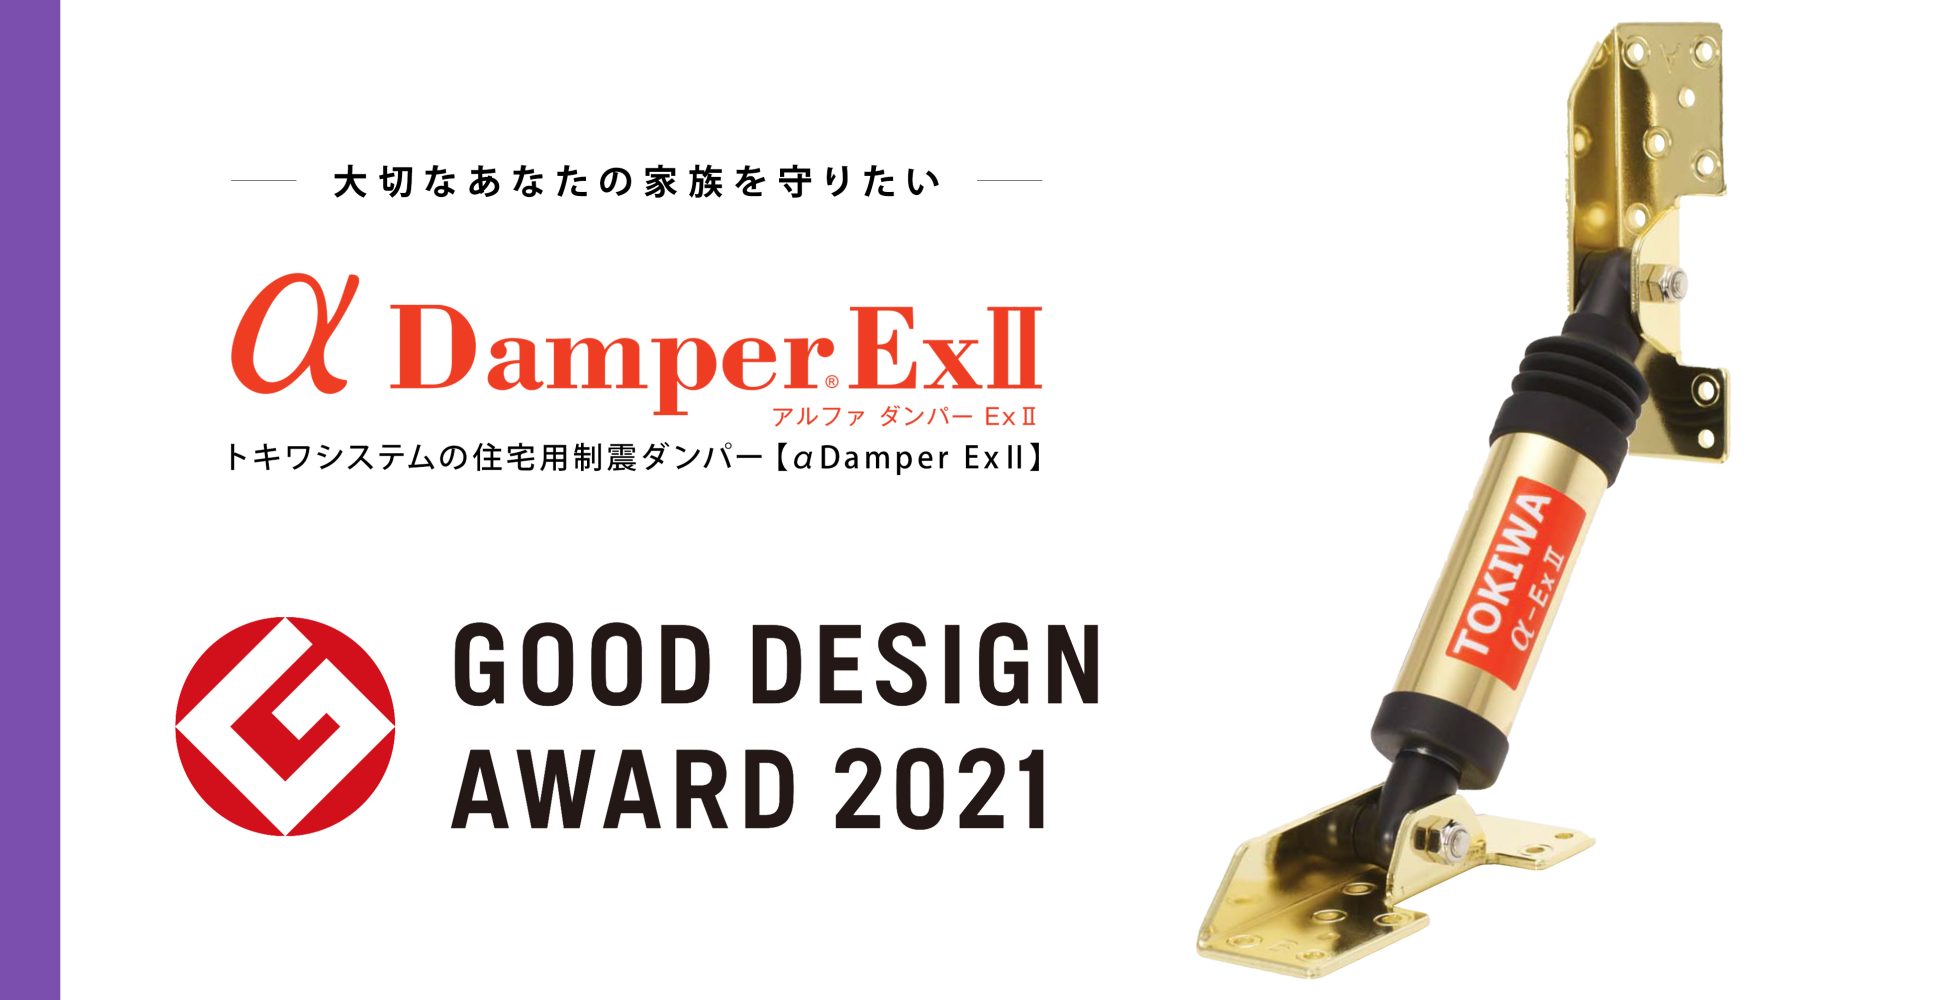 2021年度グッドデザイン賞を受賞した制震ダンパー